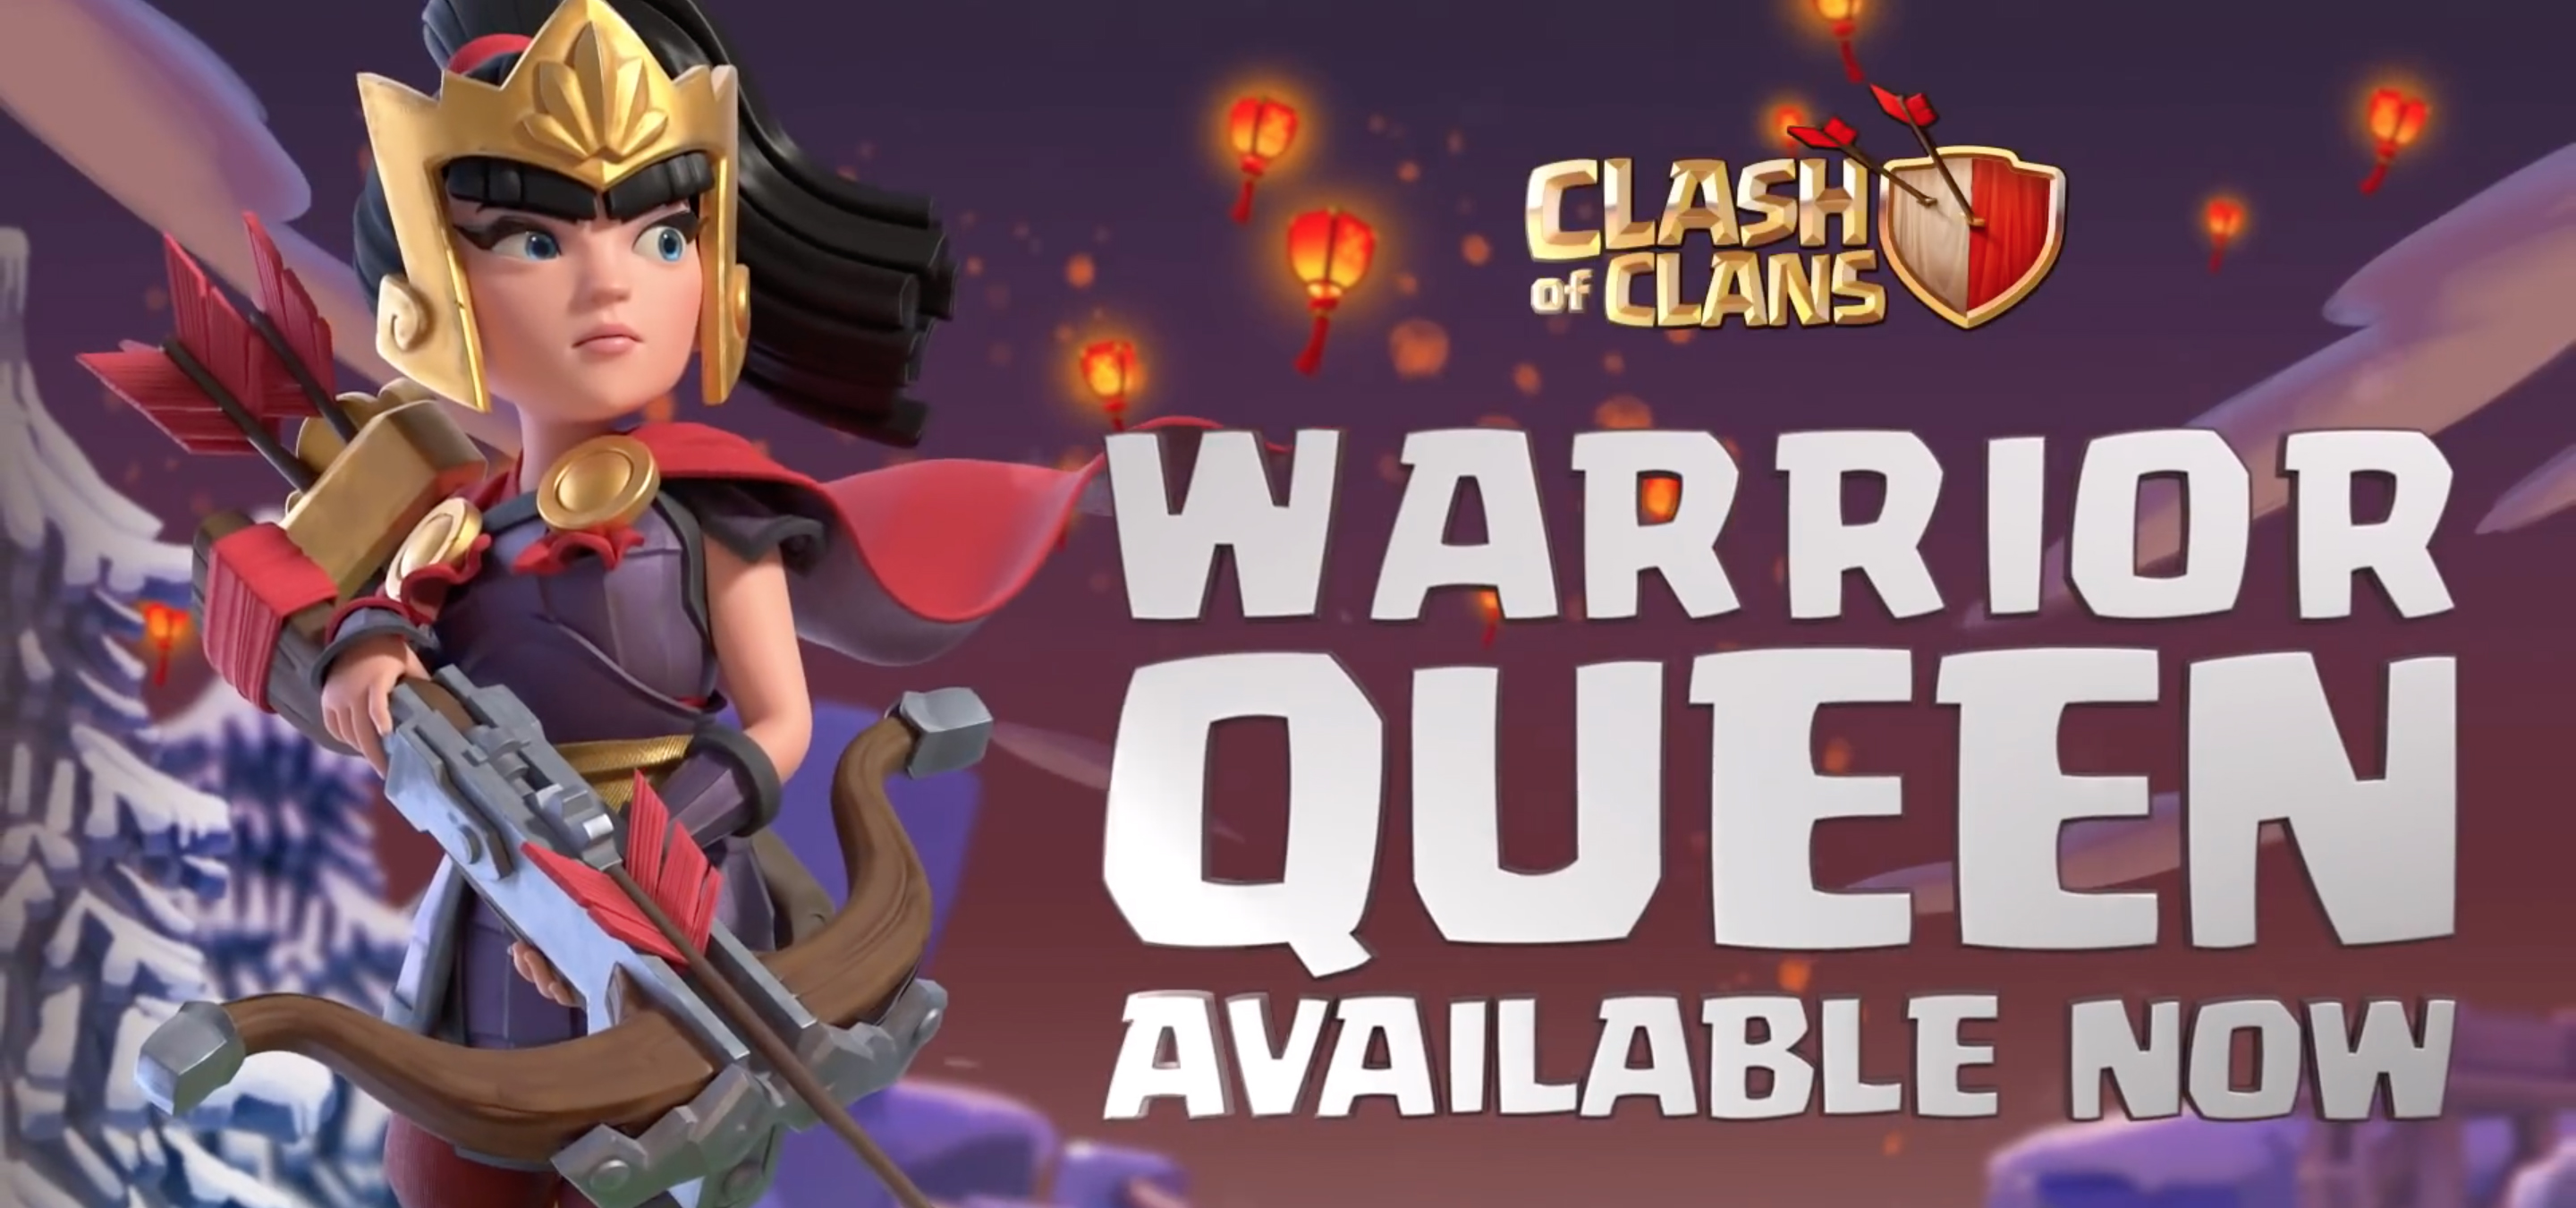 Warrior Queen Clash Of Clans , HD Wallpaper & Backgrounds